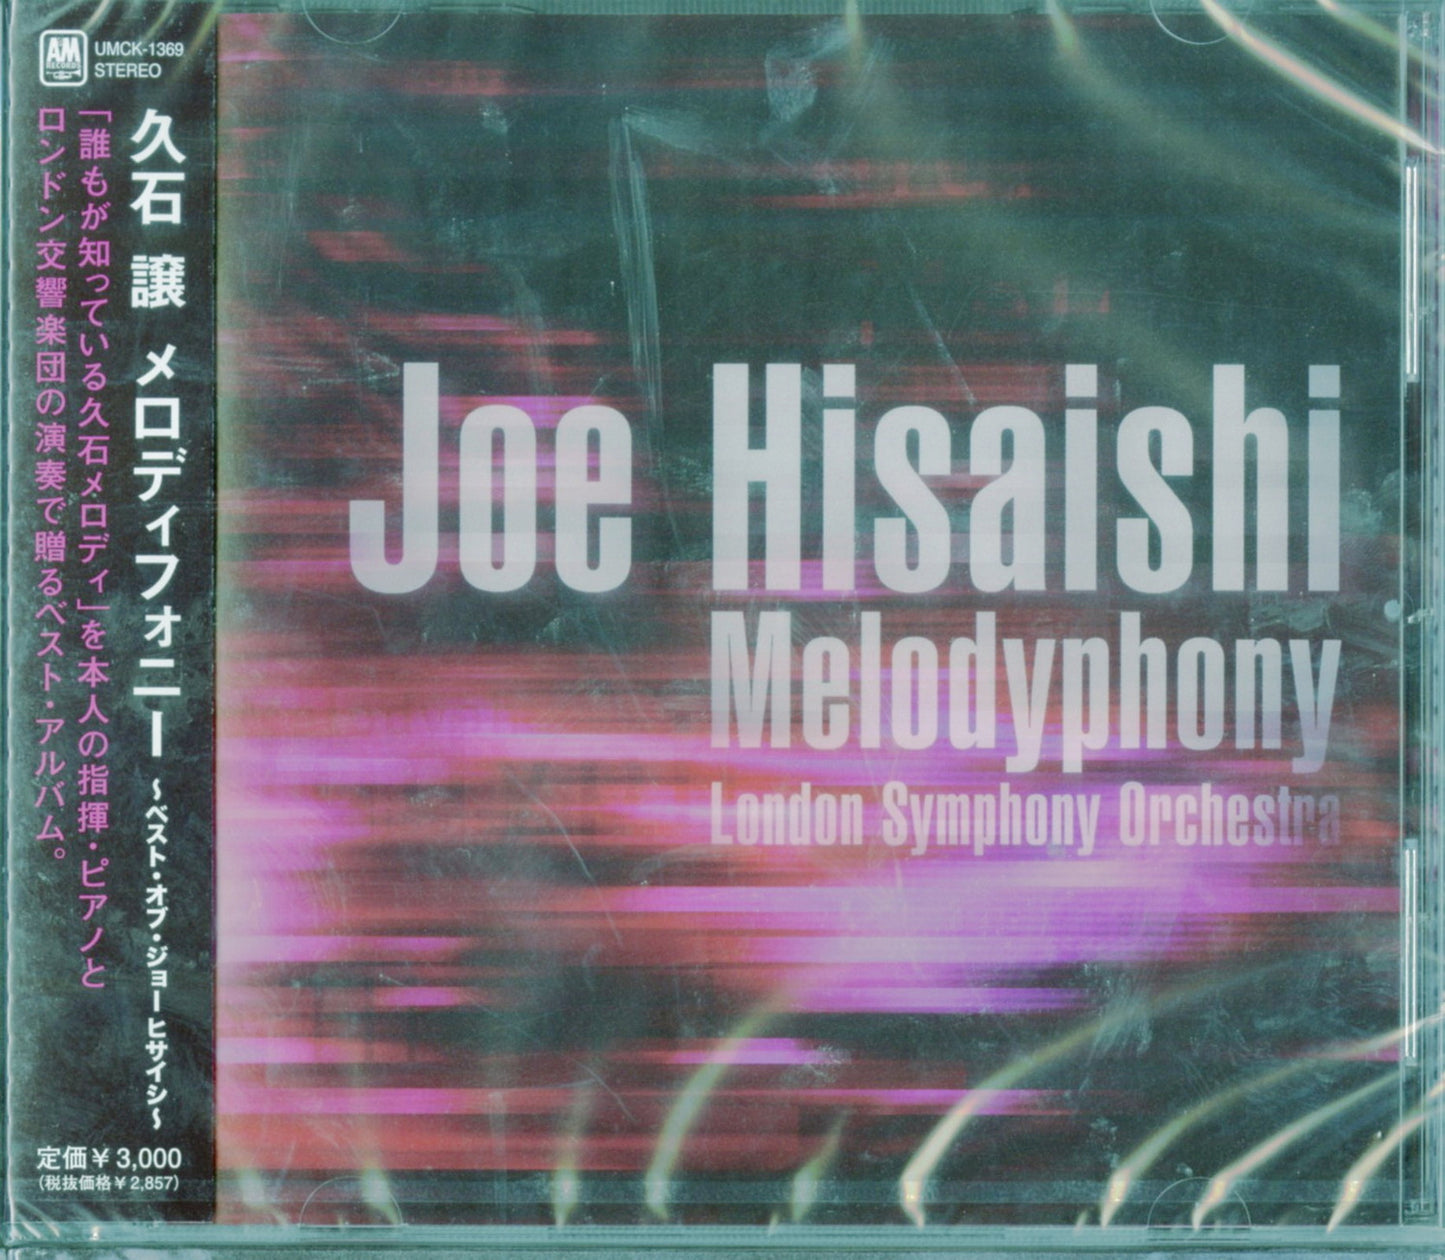 Joe Hisaishi - Melodyphony -Best Of Joe Hisaishi- - Japan  CD